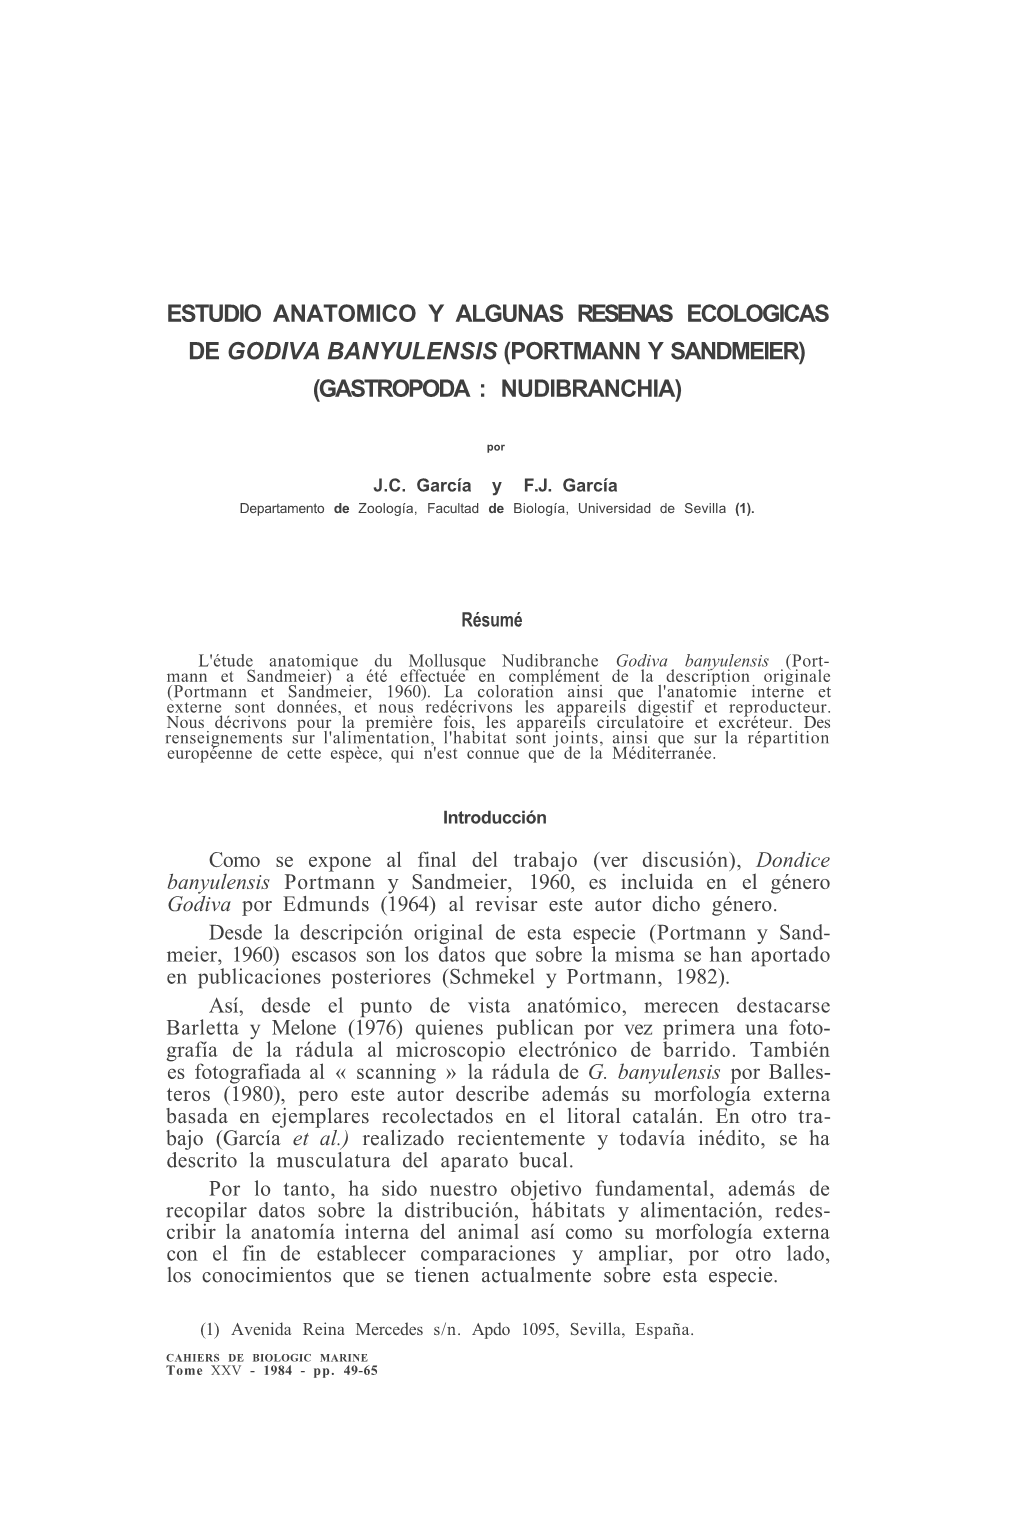 Estudio Anatomico Y Algunas Resenas Ecologicas De Godiva Banyulensis (Portmann Y Sandmeier) (Gastropoda : Nudibranchia)